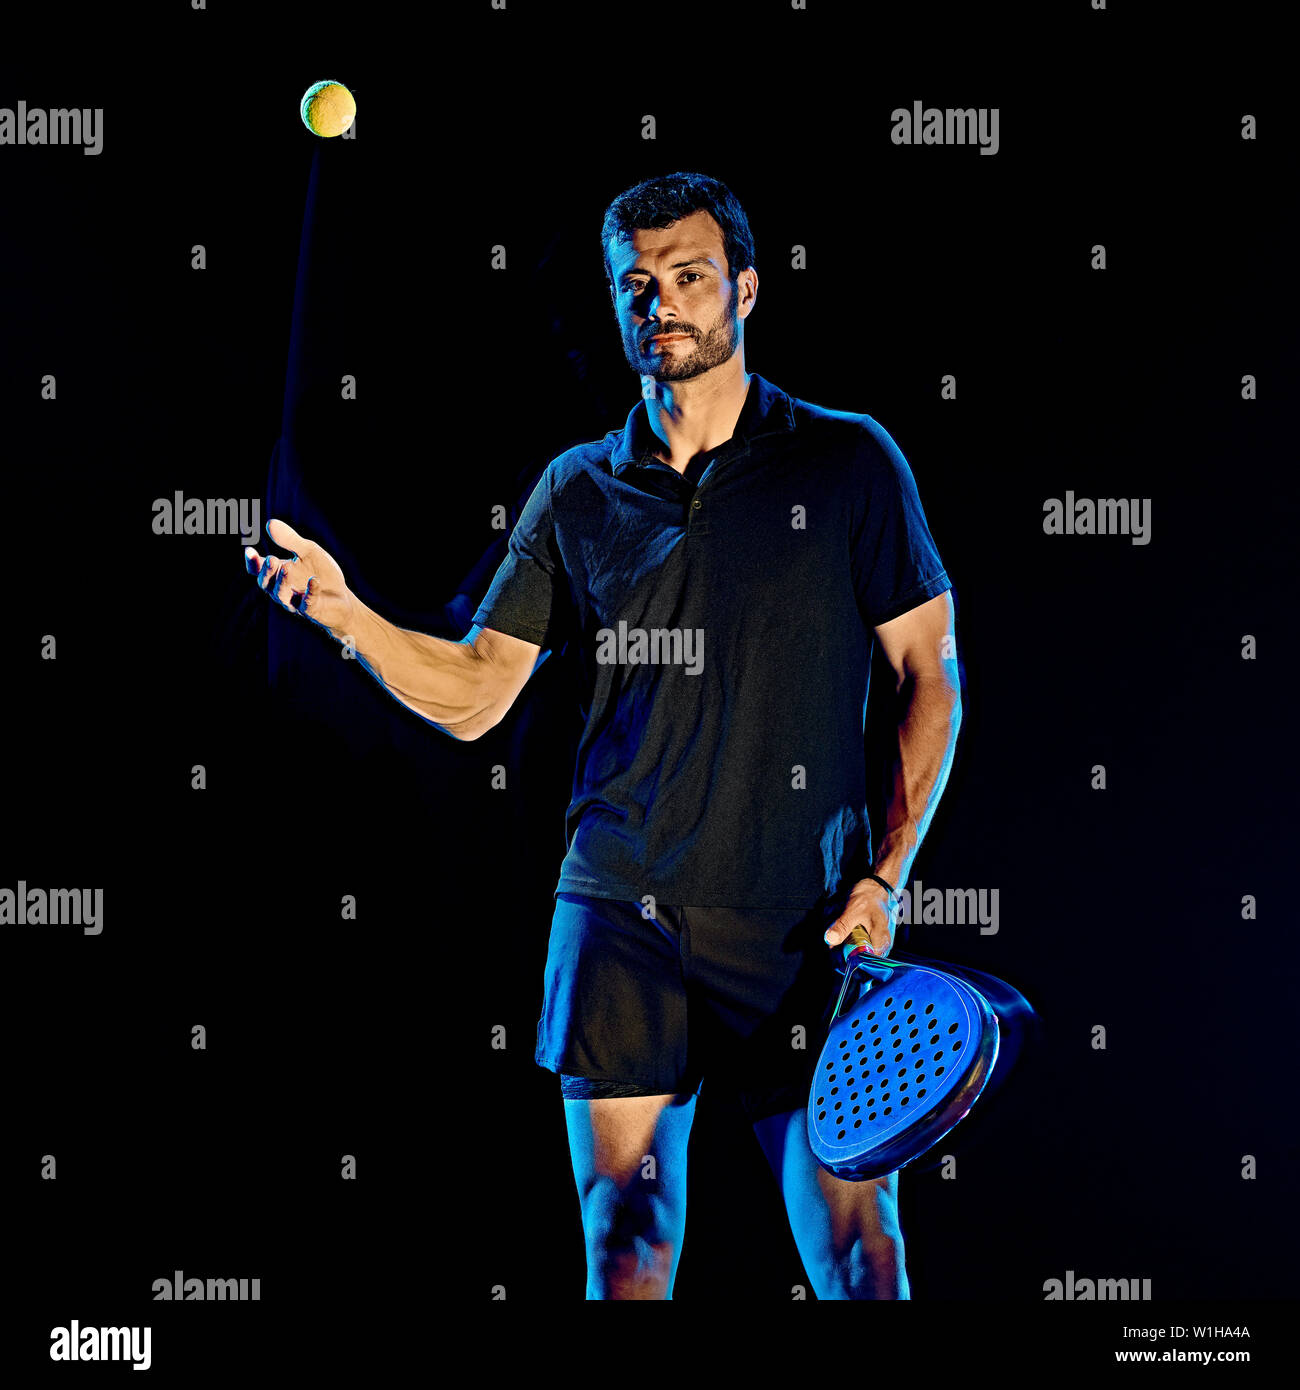 Un portrait du paddle tennis player man studio shot isolé sur fond noir avec le light painting effet flou Banque D'Images